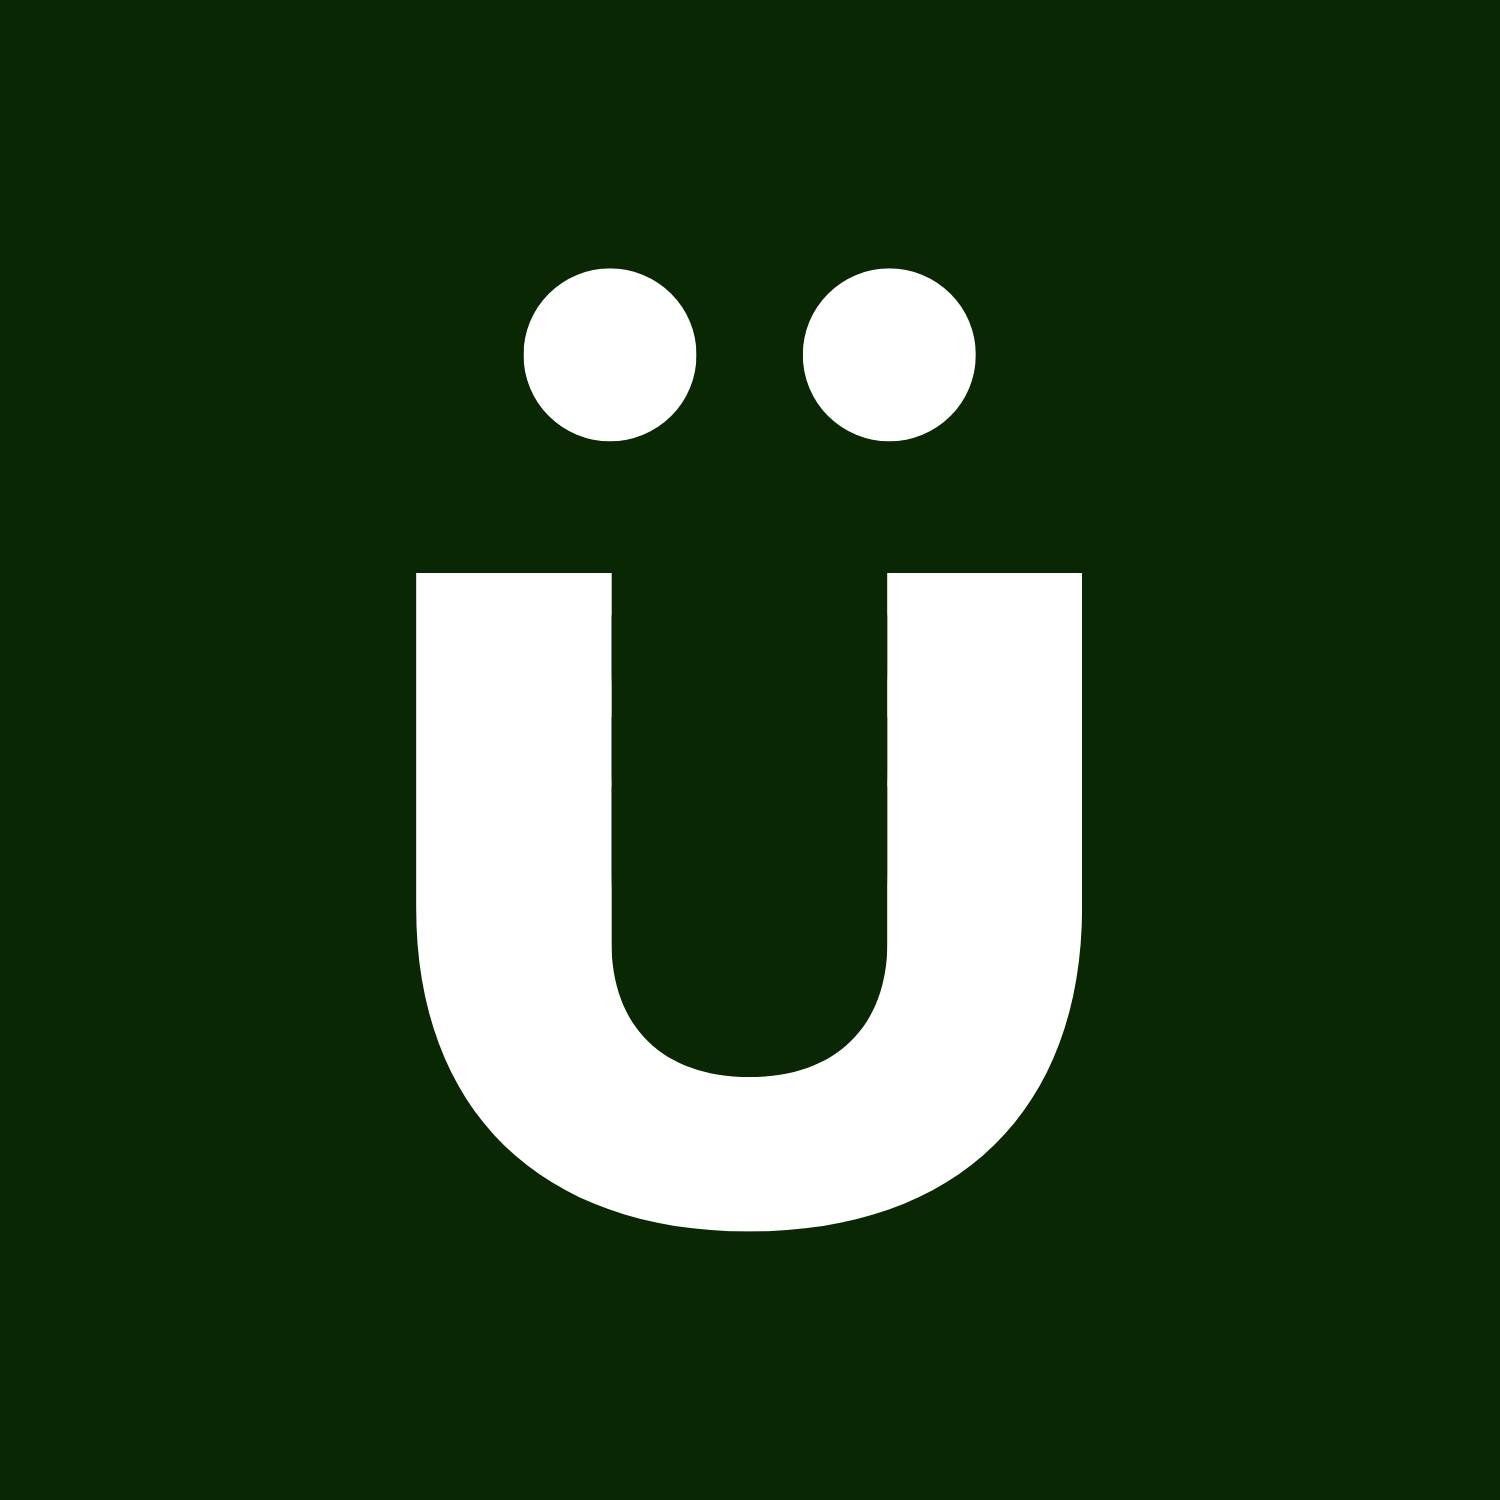 Grüns logo